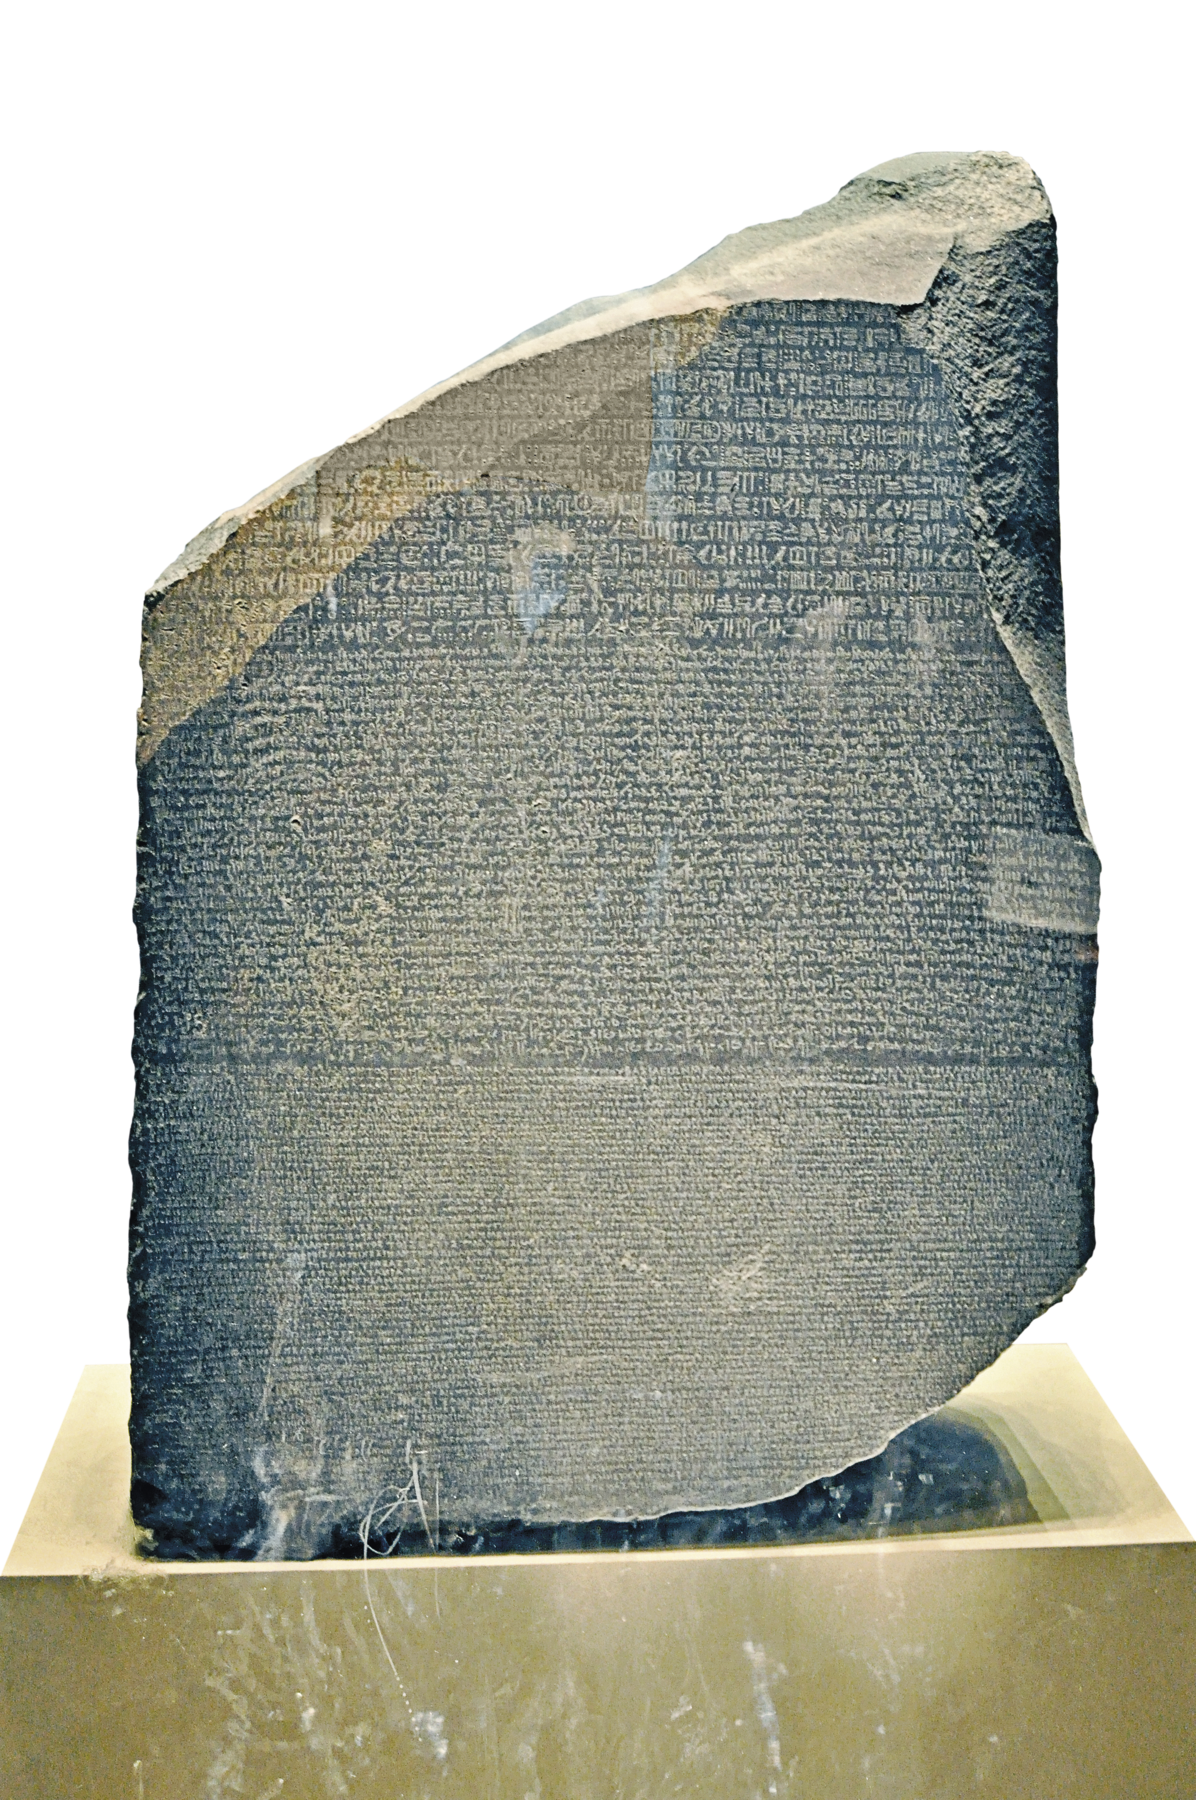 Fragmento de estela. Pedra de formato irregular e bordas assimétricas contendo escritos em hieróglifos, grego e demótico.